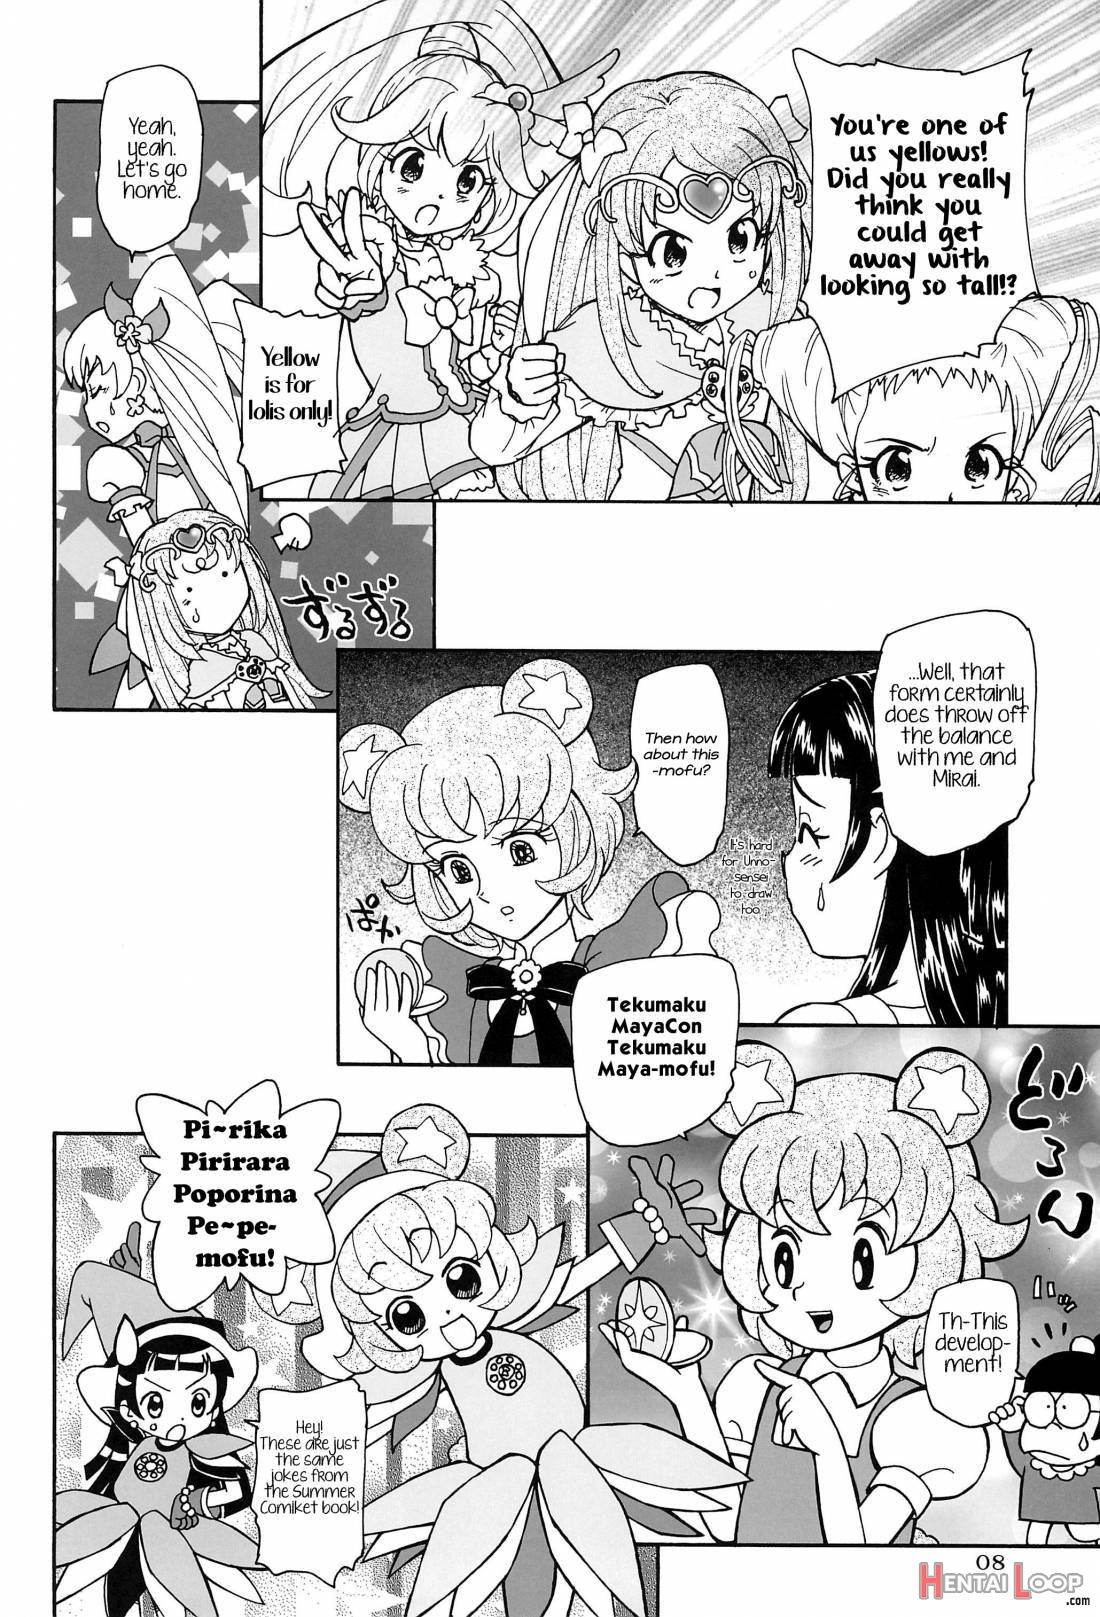 Kuma no ko Mofurun page 8